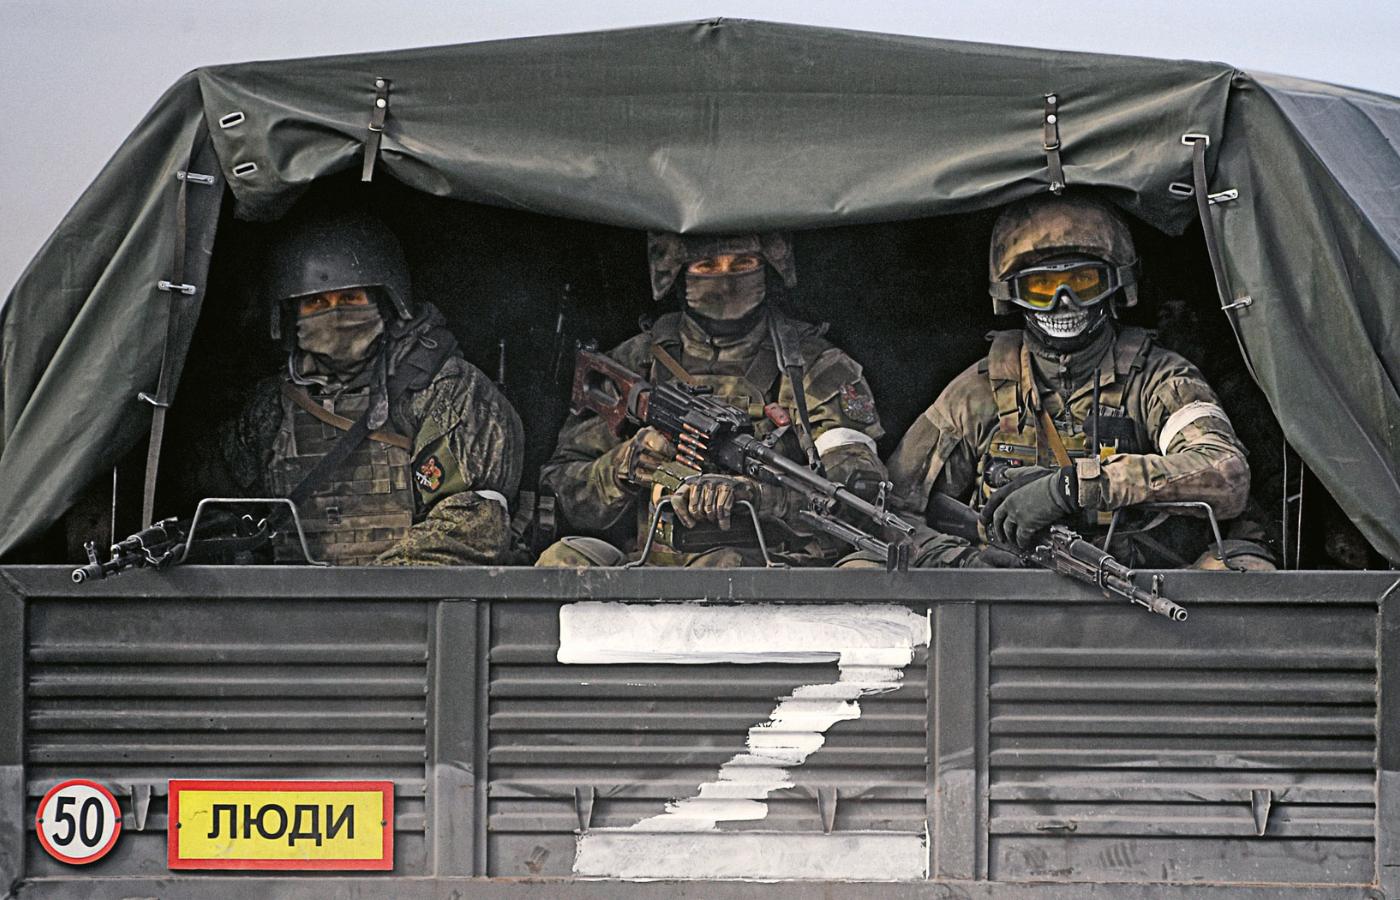 Rosyjscy żołnierze w samochodzie oznaczonym literką Z, czyli siły wschodnie nacierające z Donbasu.